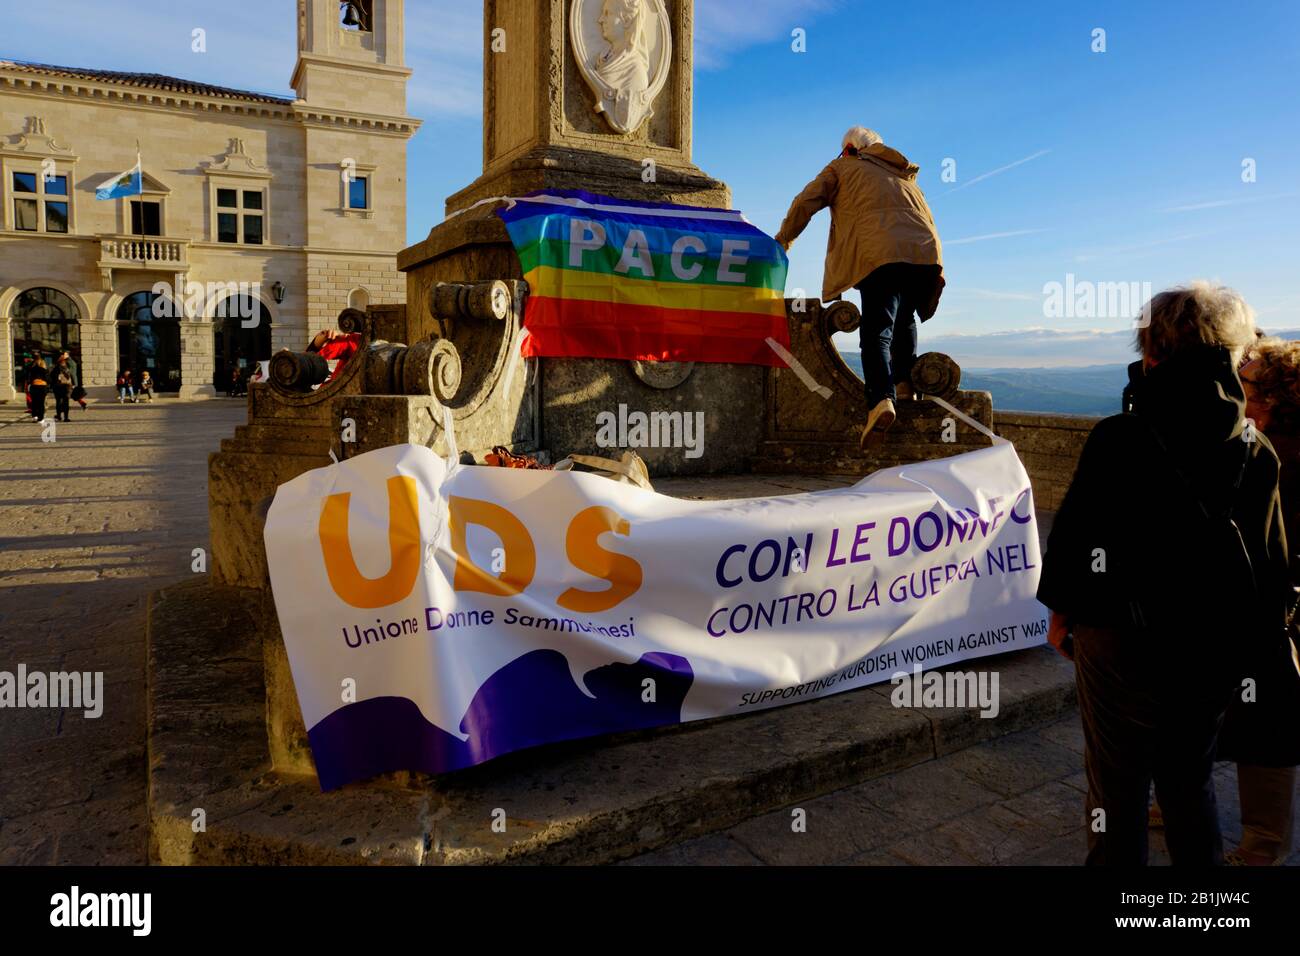 San Marino, San Marino - 19 ottobre 2019: Protesta dell'Unione delle donne sammarinesi a sostegno delle donne curde contro la guerra. Foto Stock